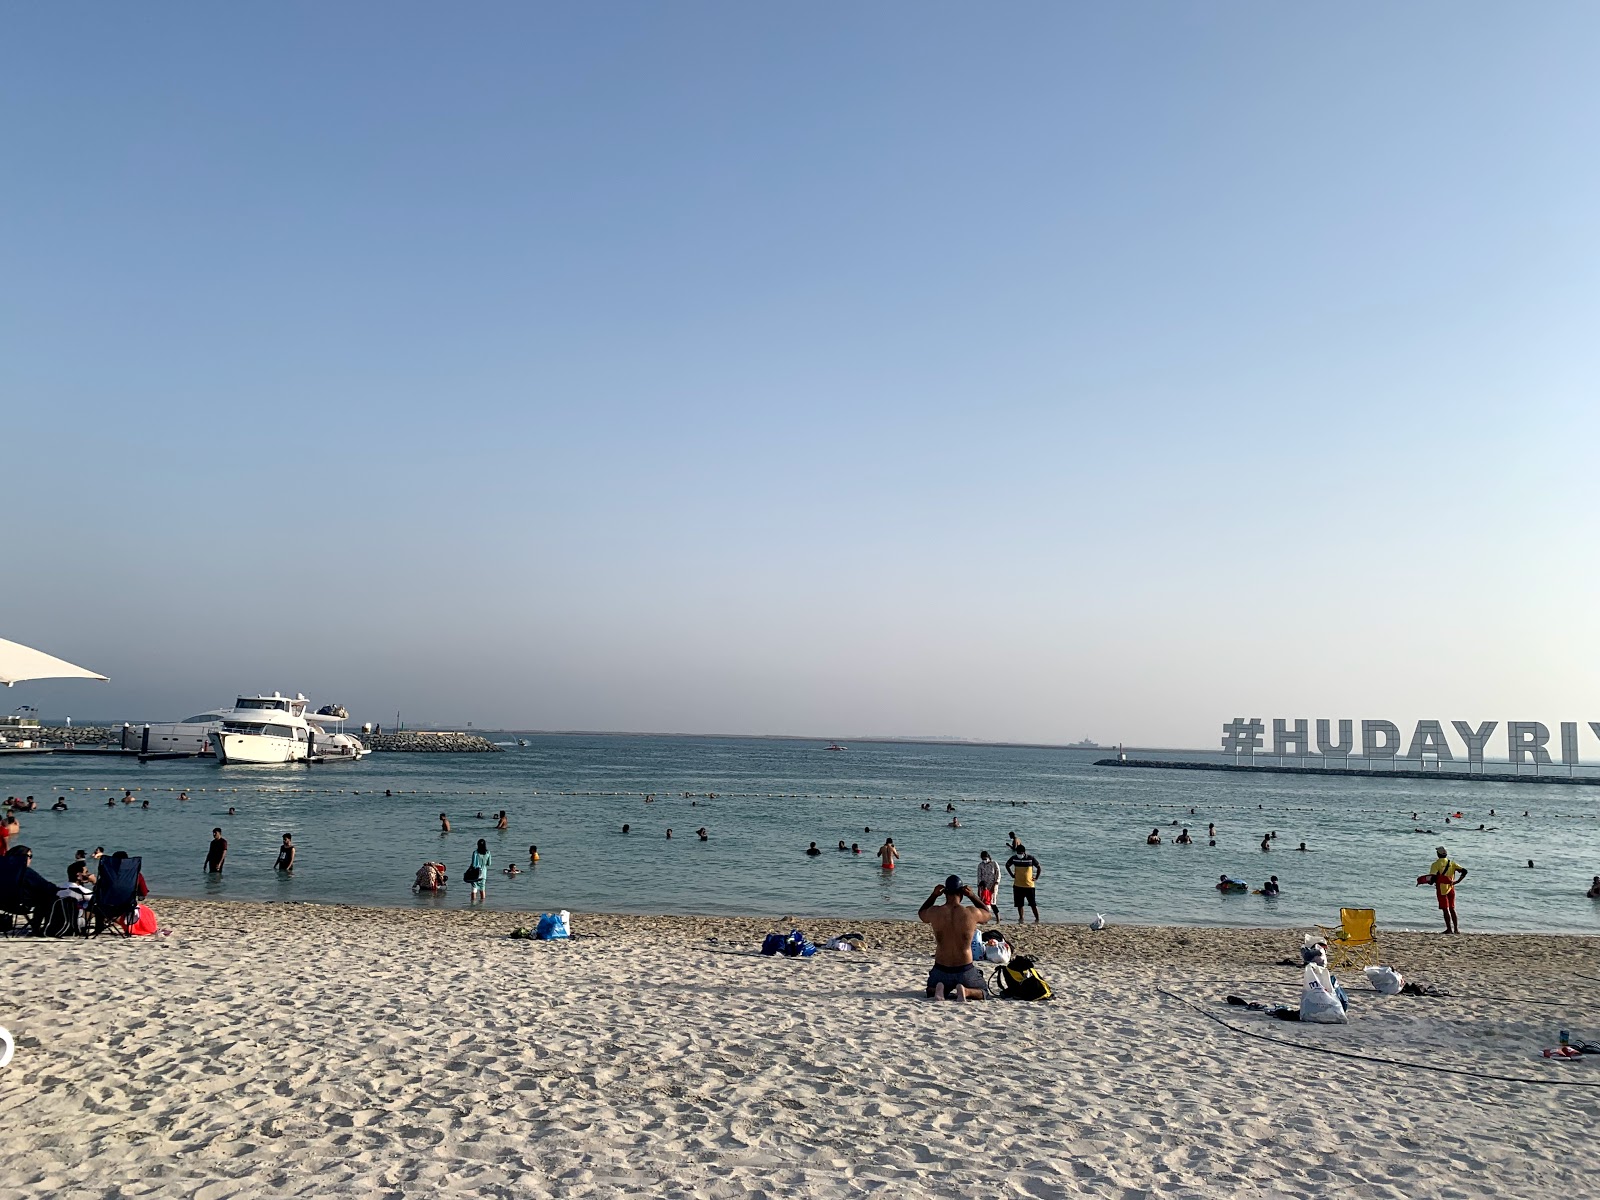 Al Hudayriat Beach'in fotoğrafı - rahatlamayı sevenler arasında popüler bir yer